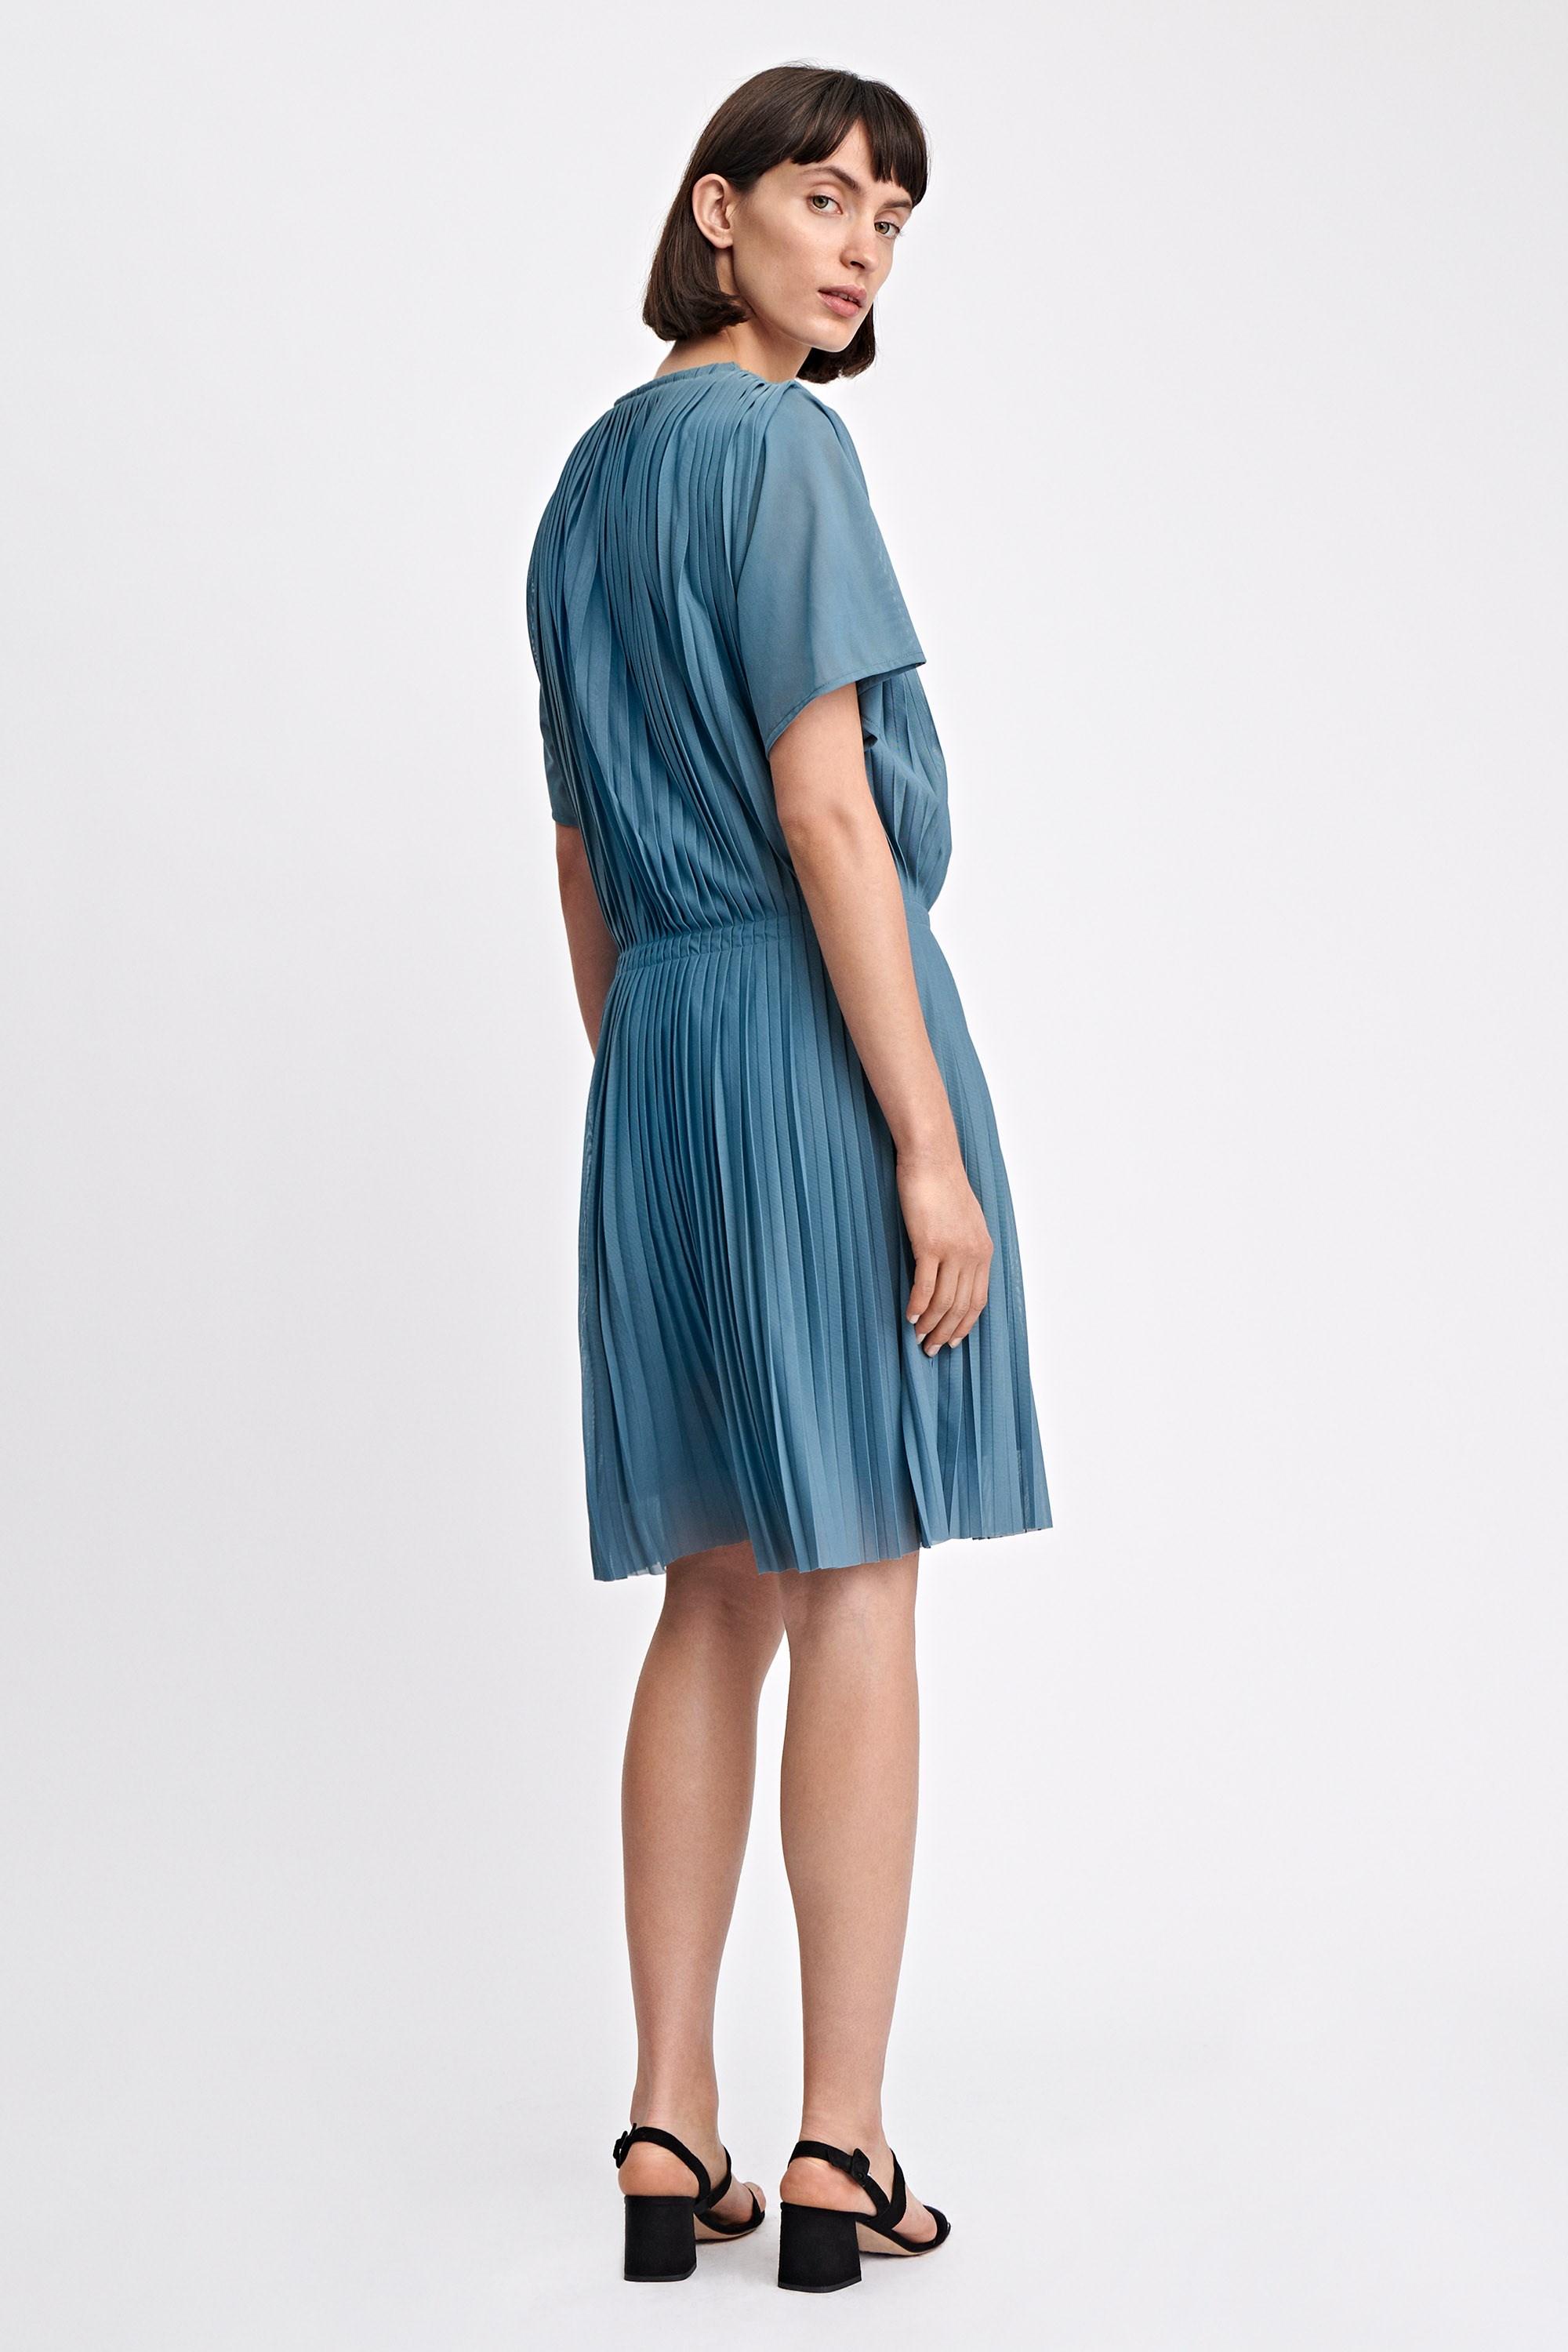 Filippa K Cotton Pleated Dress in Blue - Lyst